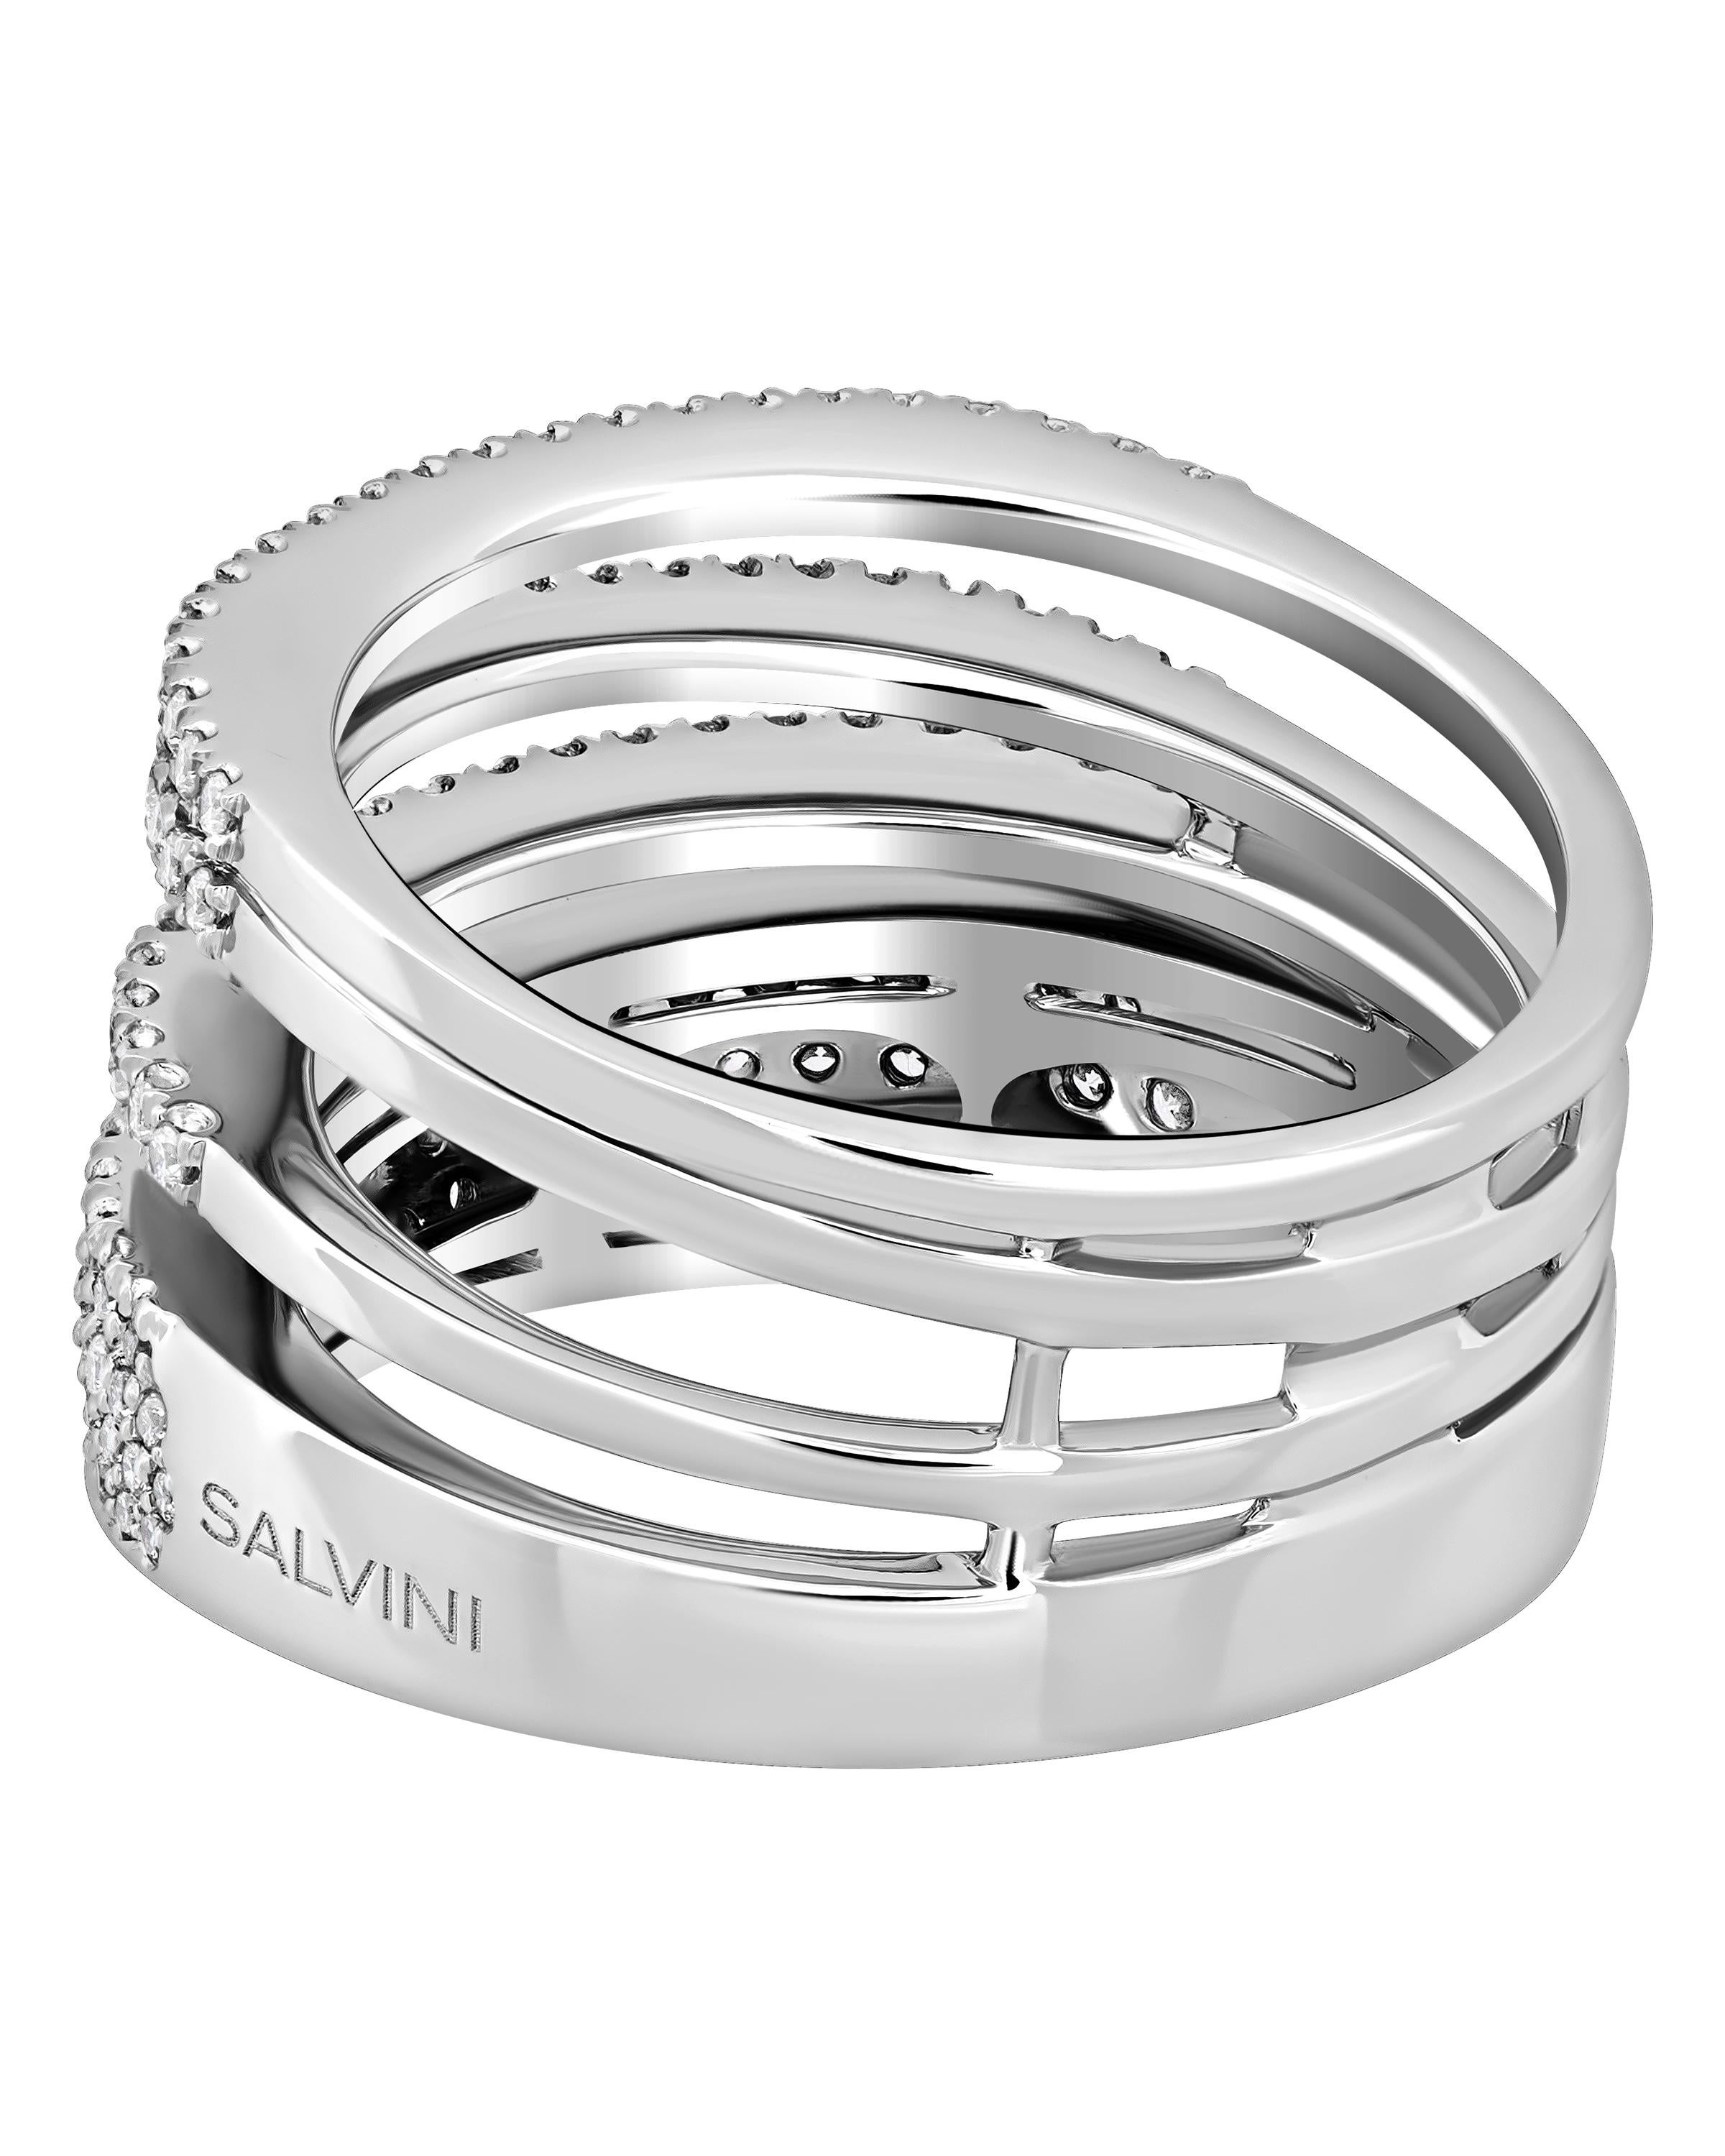 Dieser brillante Salvini 18K Weißgold-Puzzle-Ring verfügt über vier Weißgoldbänder, die mit Diamanten von 0,80ct. tw. geschmückt sind. Die Ringgröße ist 6,75. Die Breite des Bandes beträgt 9,2 mm. Das Gewicht beträgt 10,5 g. Dieser Designer-Schmuck